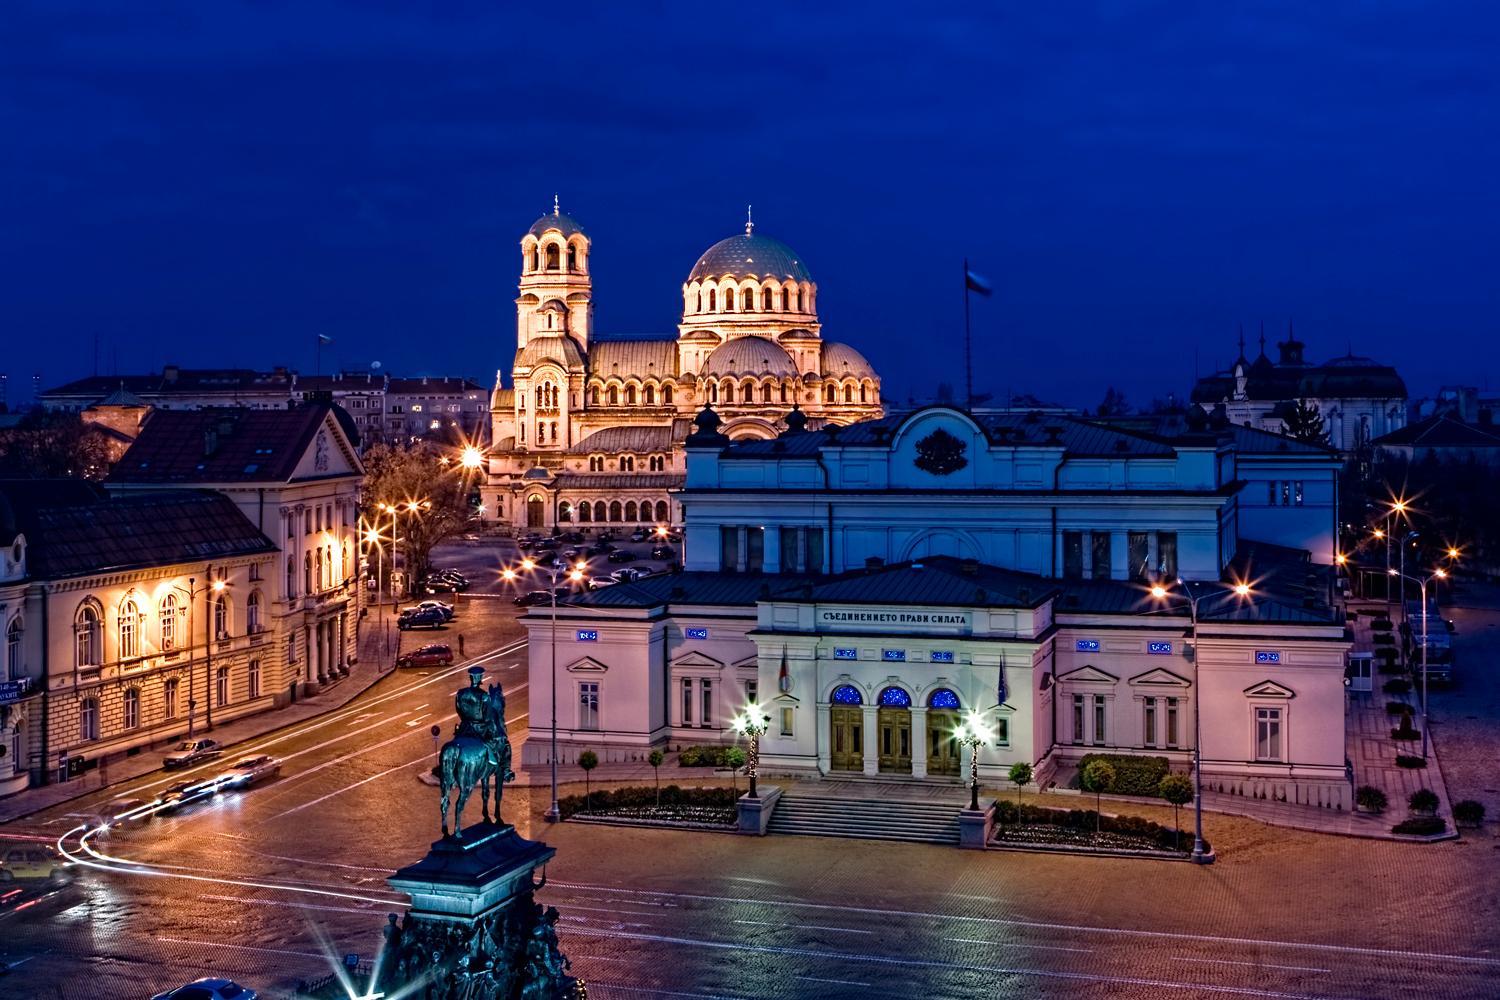 Snittkostnaden per dag i Bulgariens huvudstad Sofia är cirka 340 kronor per person, enligt Europe 3-Star Traveler Index. Då är boende, transporter, mat och aktiviteter inräknade.